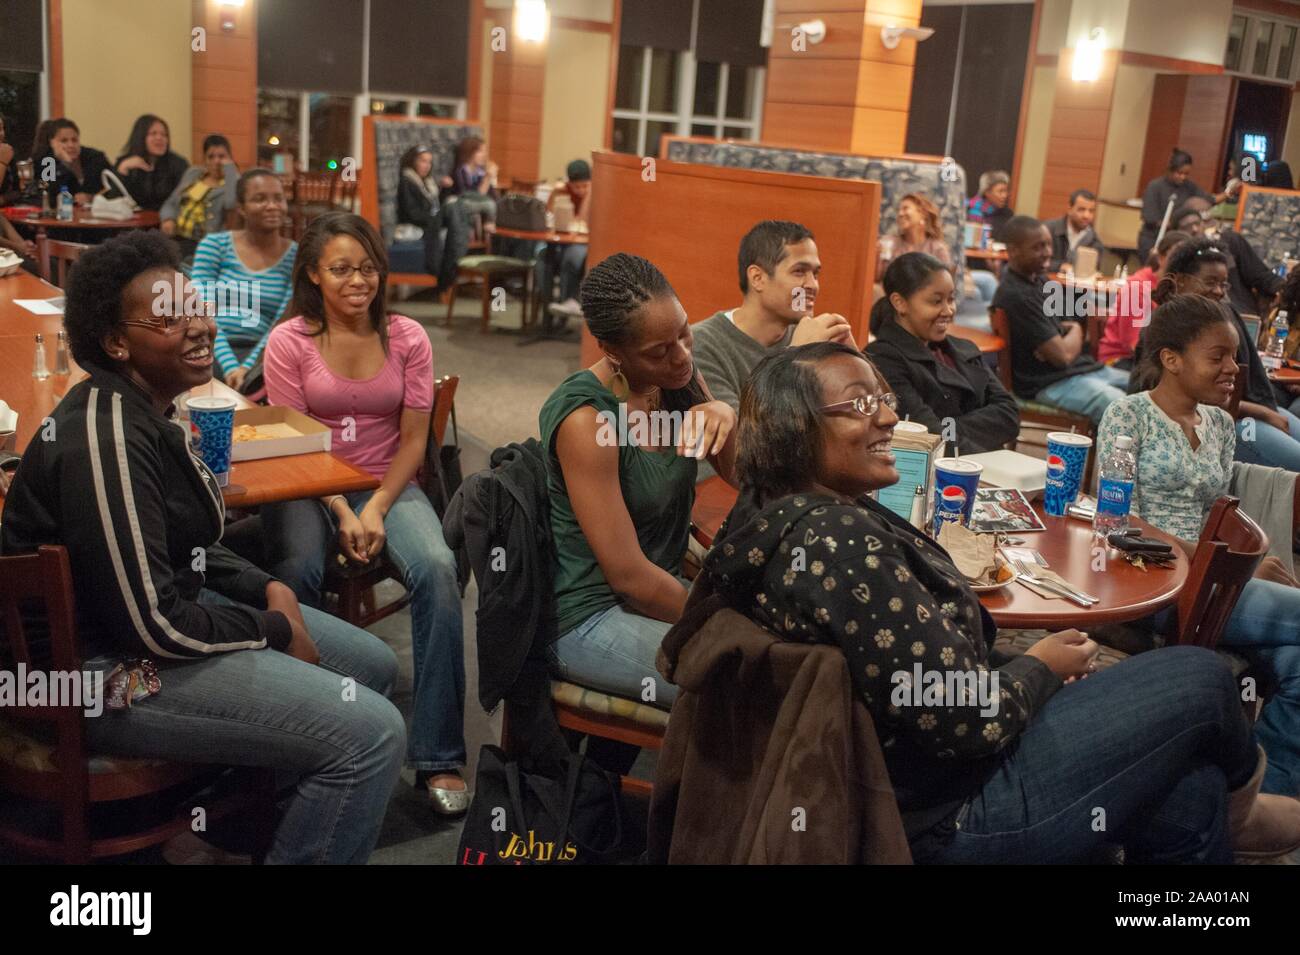 Mitte der Schuß von lächelnden Menschen an Tischen sitzen, Zuzusehen - Aktion der Kamera, während des Black History Month Poetry Slam Veranstaltung an der Johns Hopkins Universität, Baltimore, Maryland, 7. Februar 2009. Vom Homewood Sammlung Fotografie. () Stockfoto